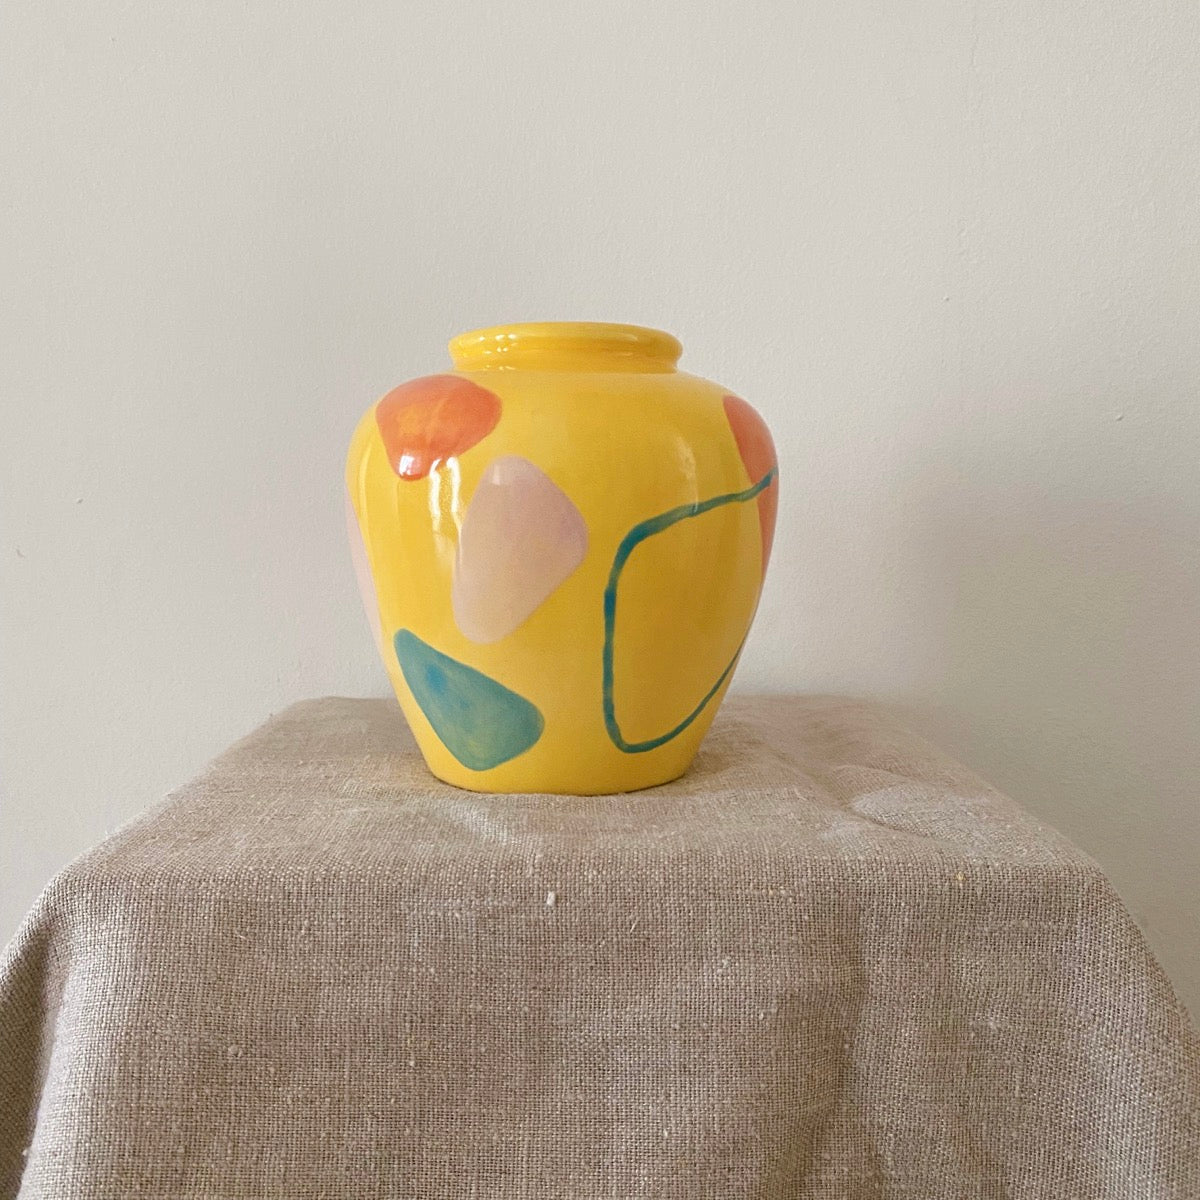 Yellow round-shaped pot